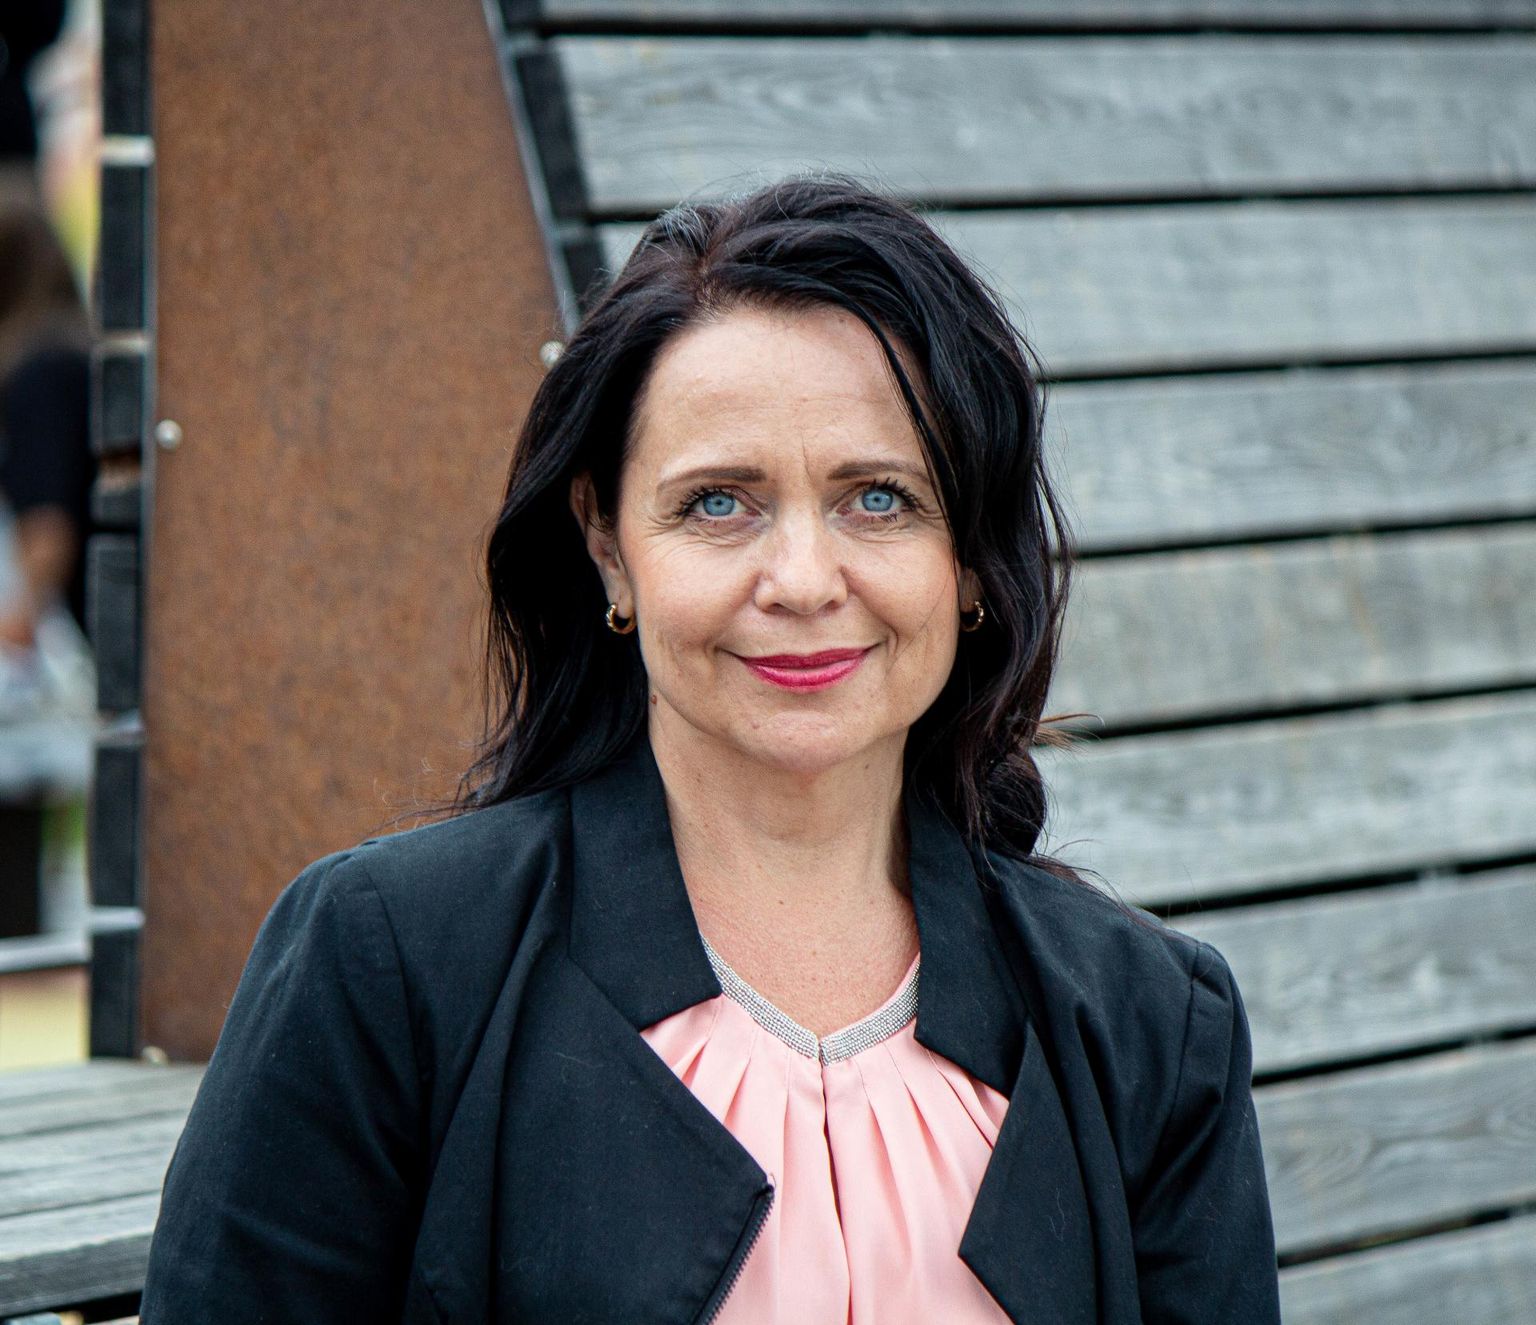 Endine minister Anneli Ott kandideerib Keskerakonna ridades Tartu linnas.